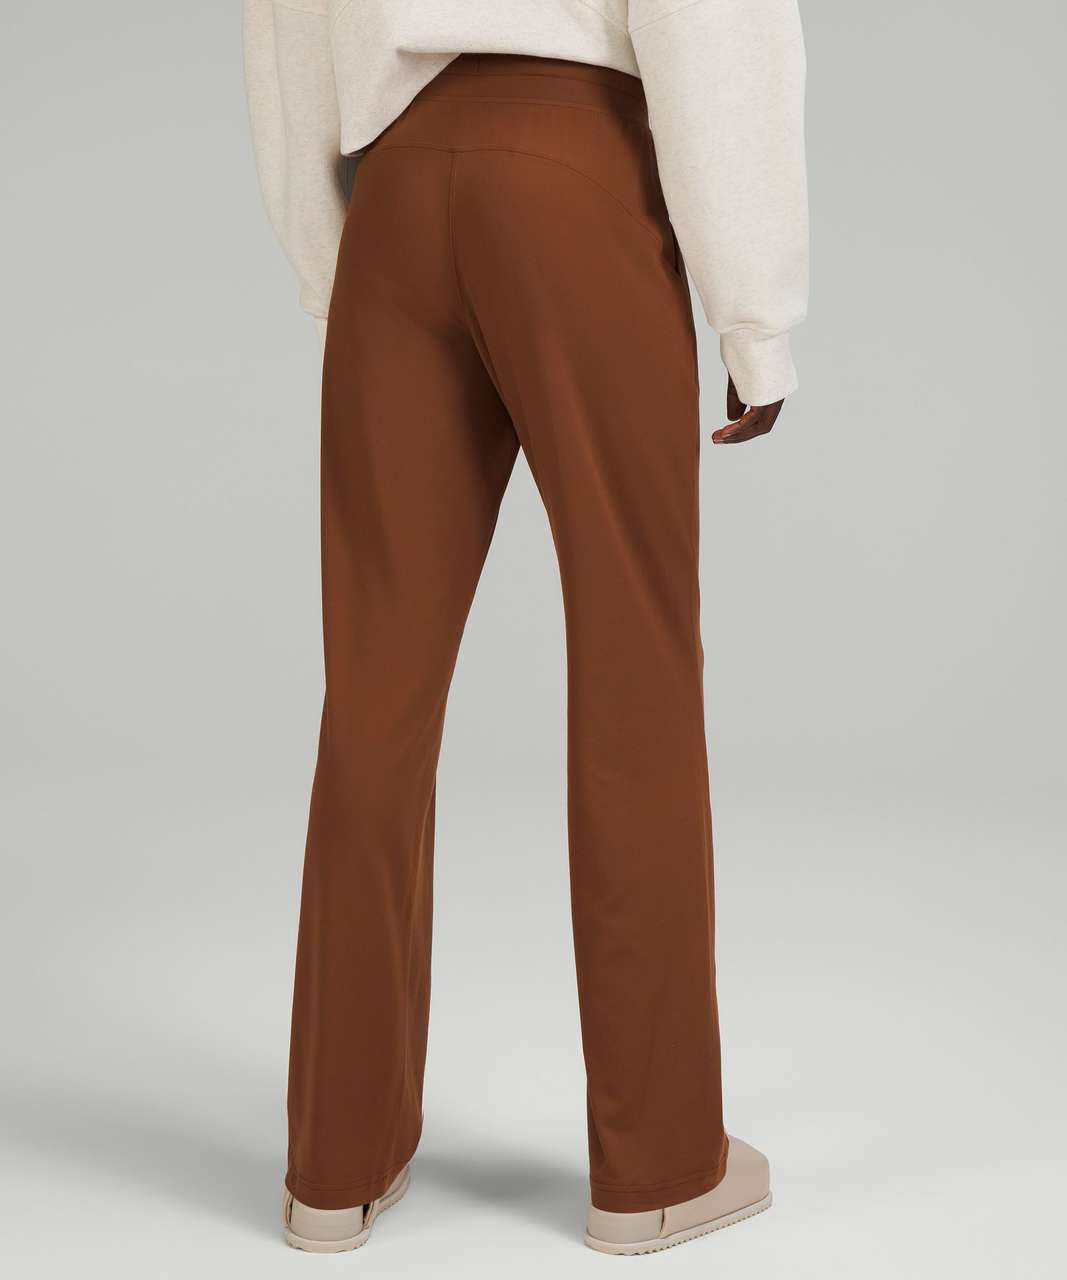 Brown Velvet Trousers - Velvet Pants - High-Rise Trousers - Lulus